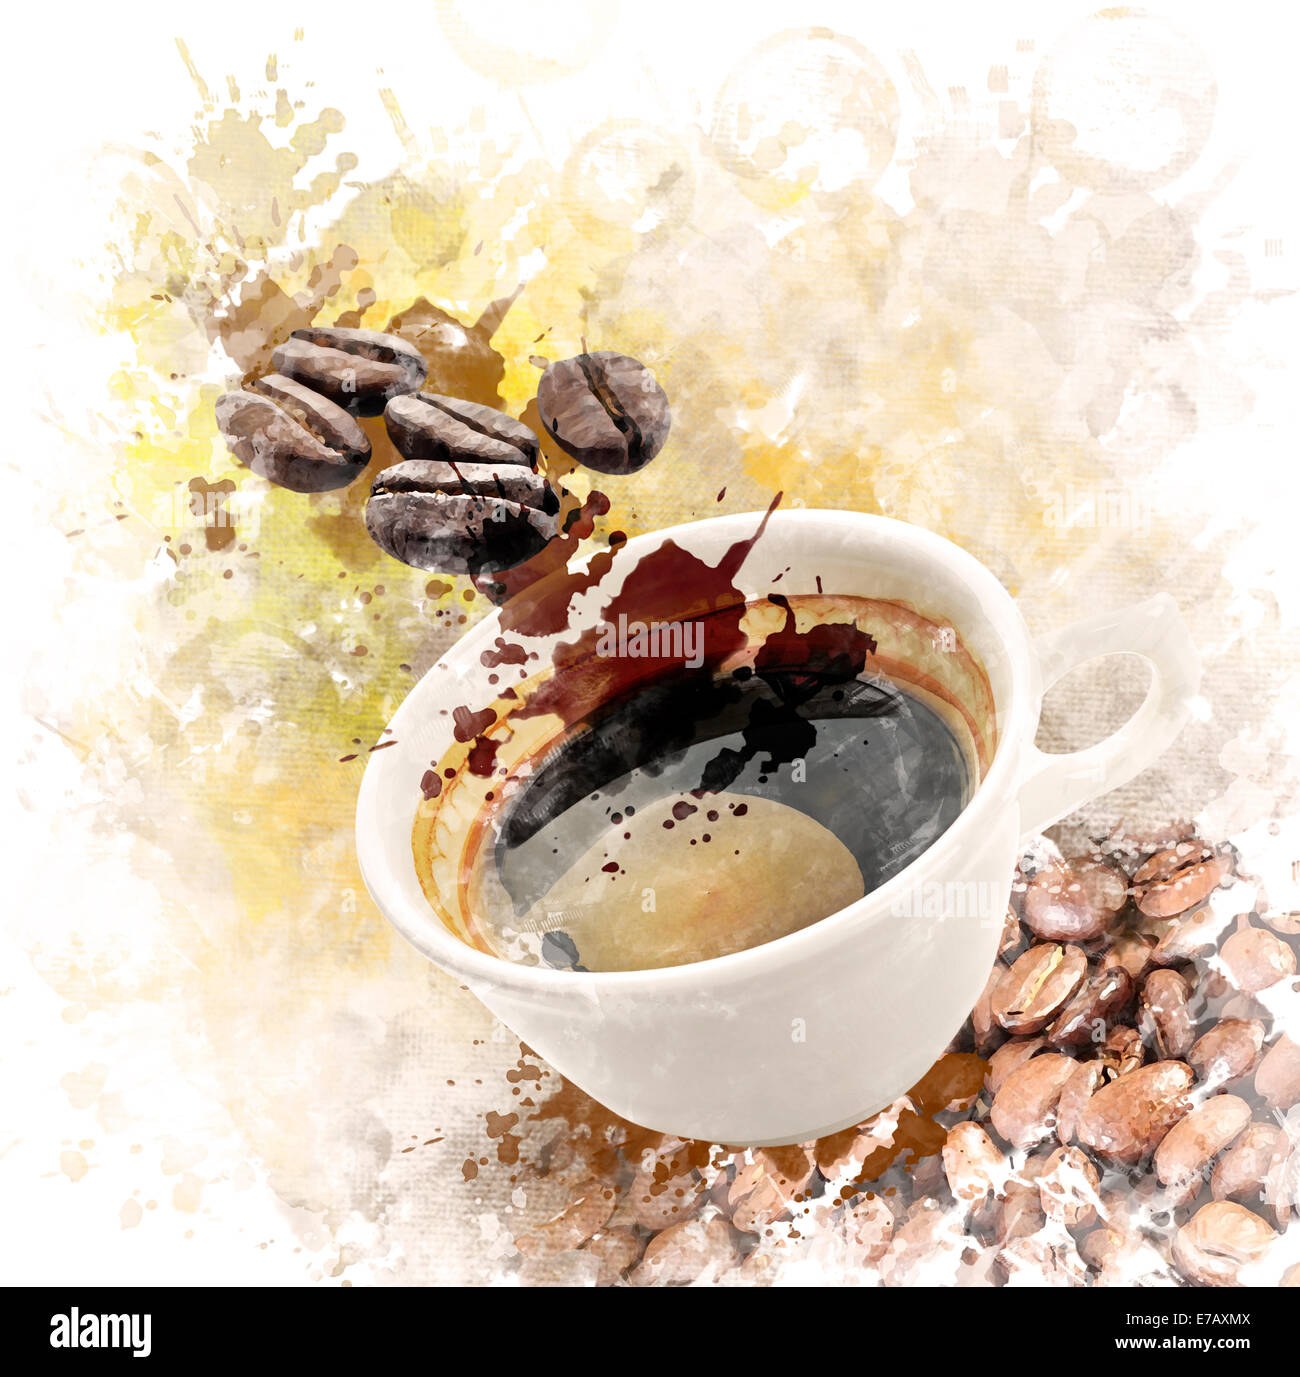 Aquarelle peinture digitale de la tasse de café du matin Banque D'Images